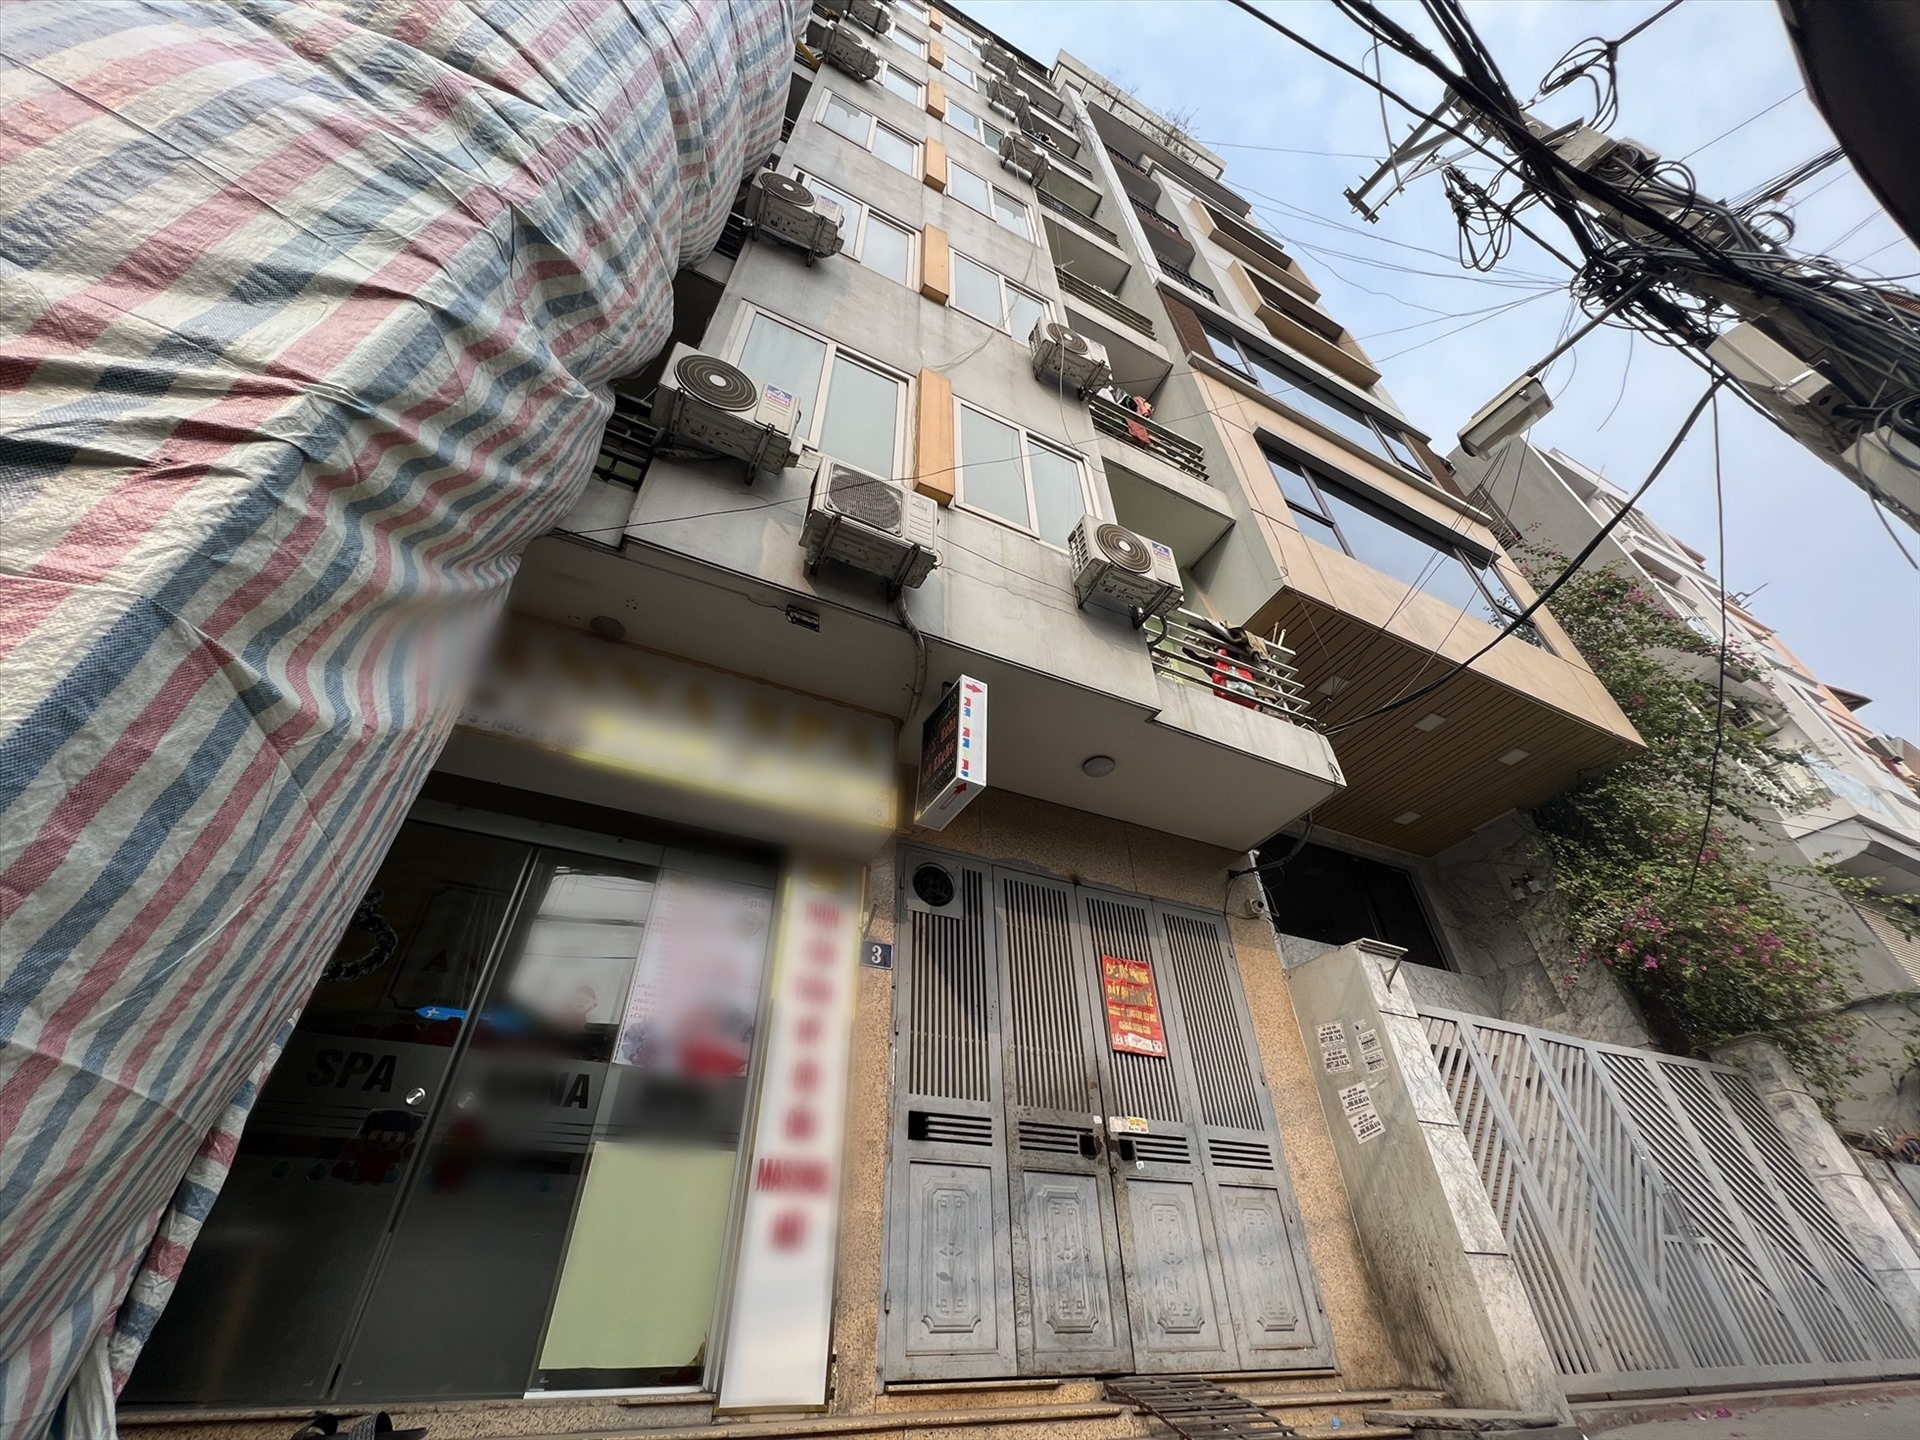 Lo ngại chung cư mini bóp nghẹt hạ tầng đô thị Hà Nội